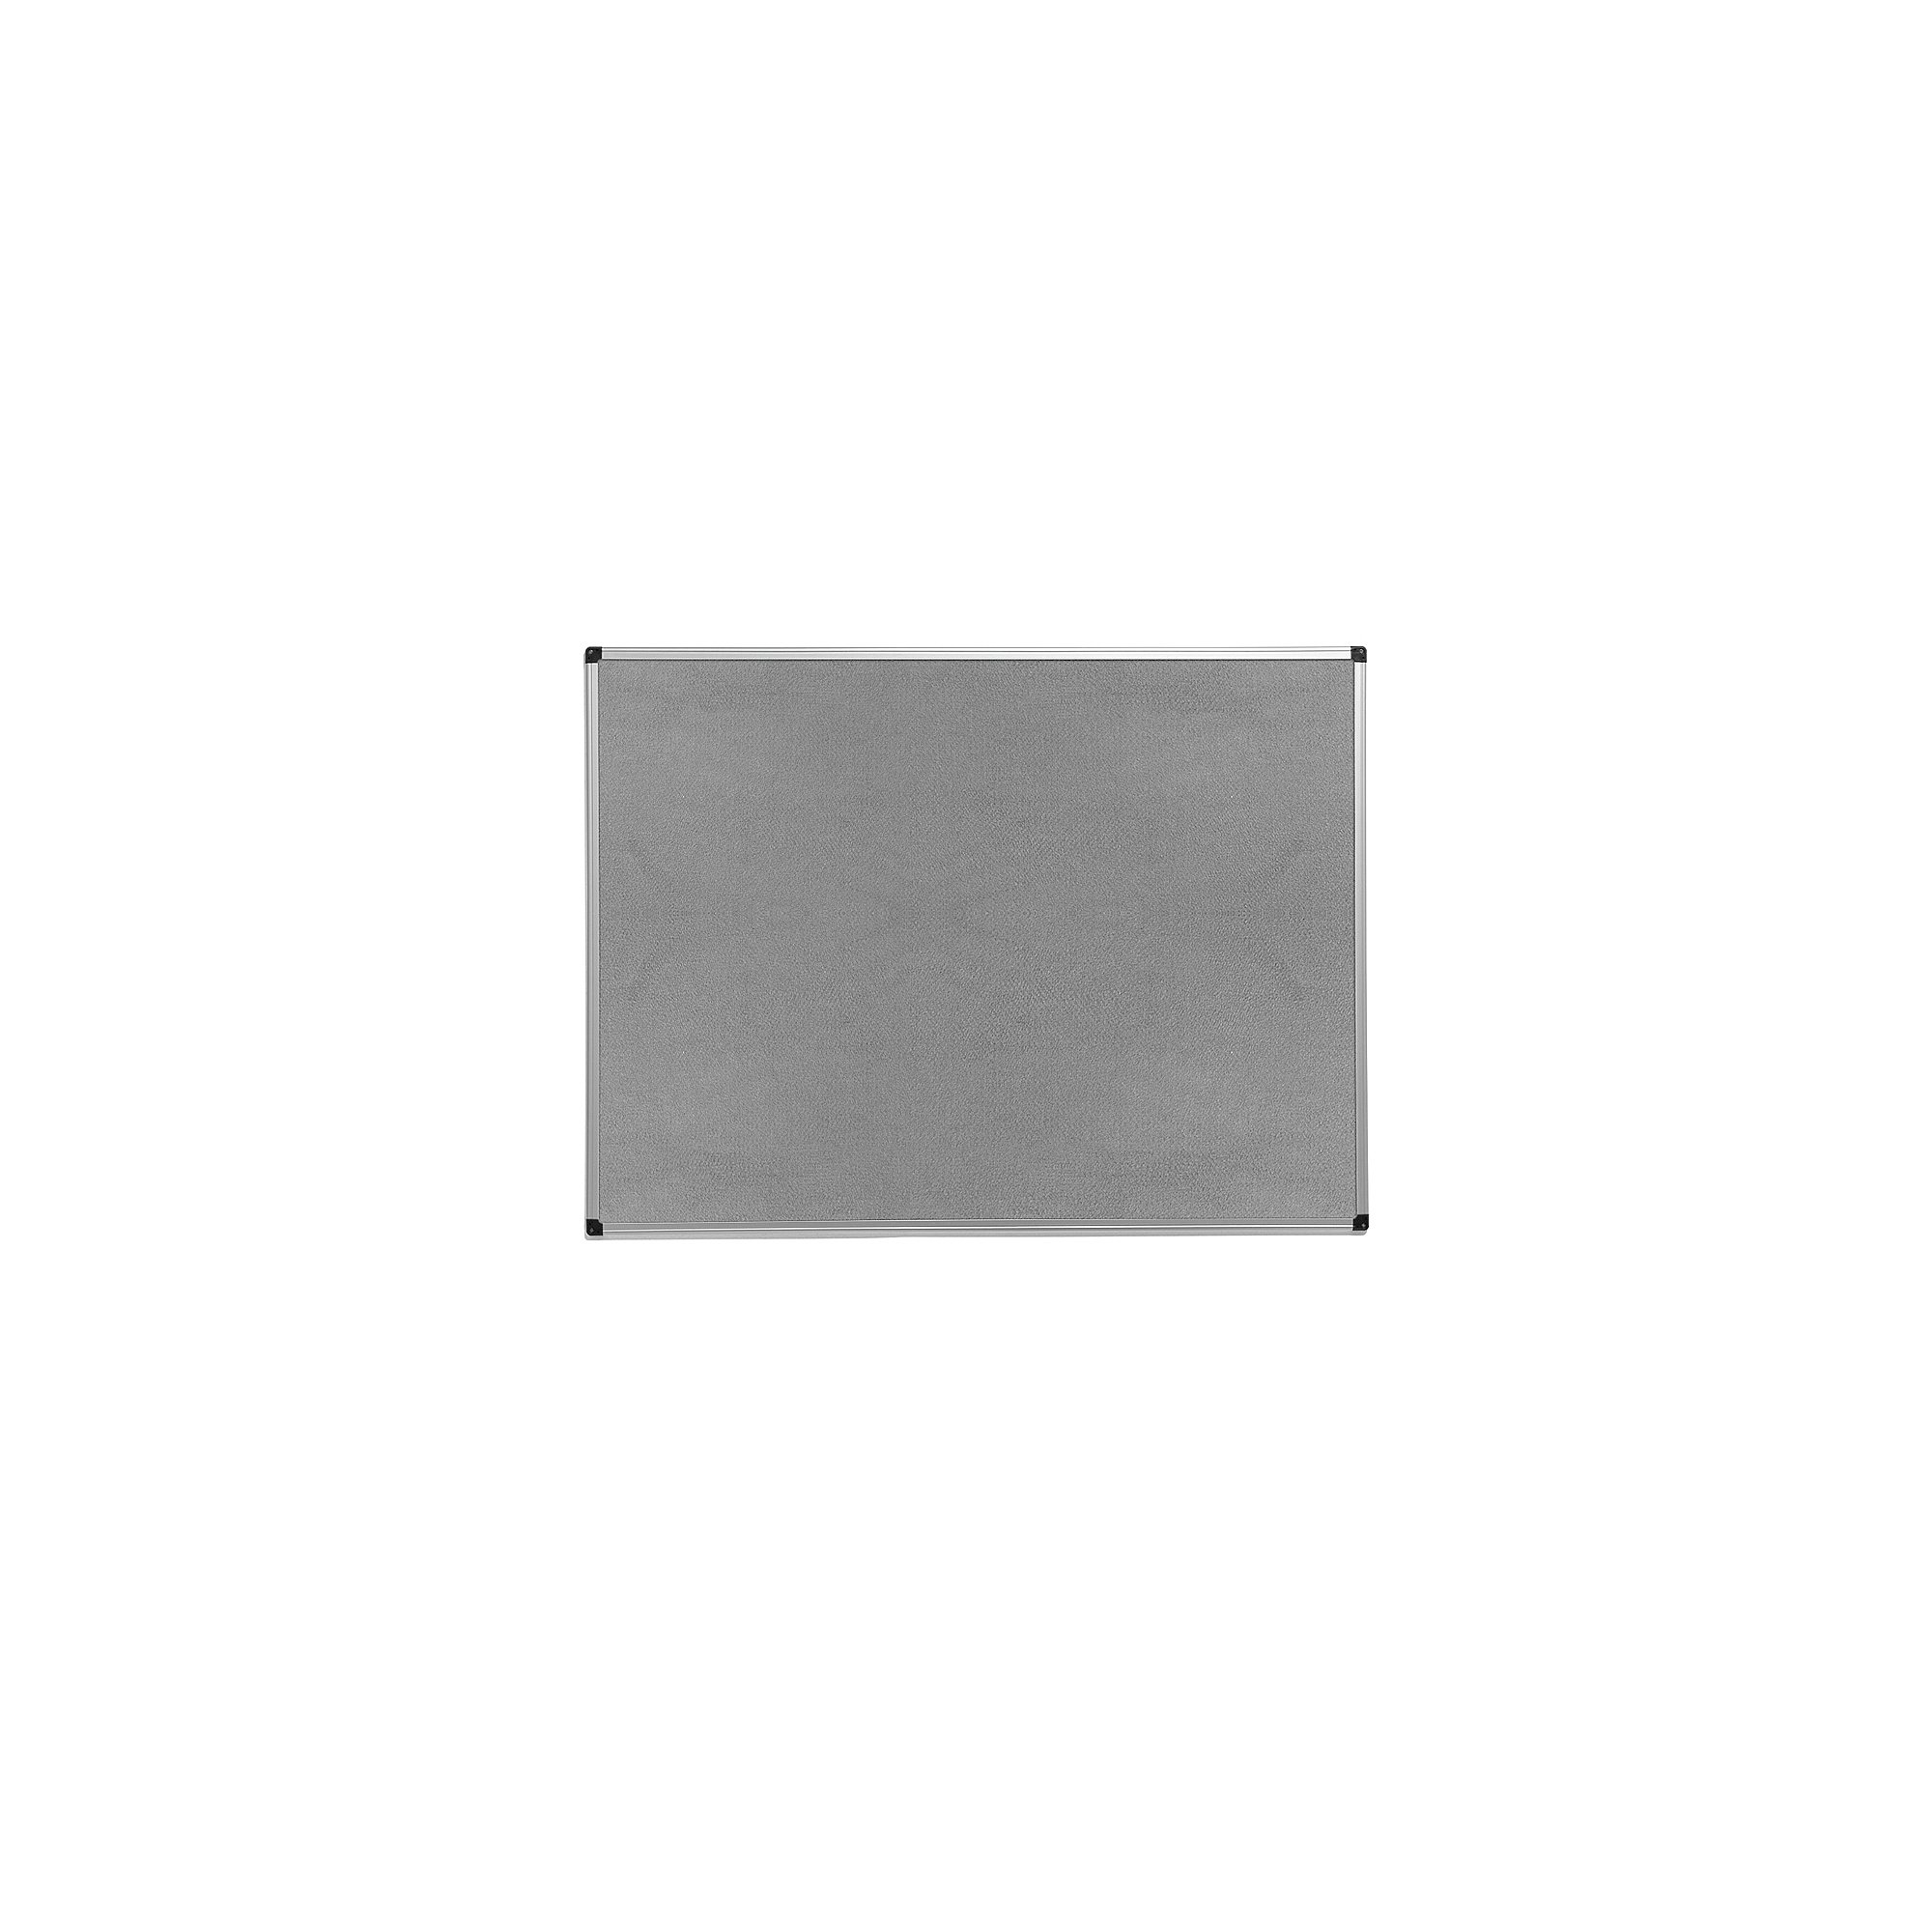 Nástěnka MARIA, 600x450 mm, šedá, hliníkový rám